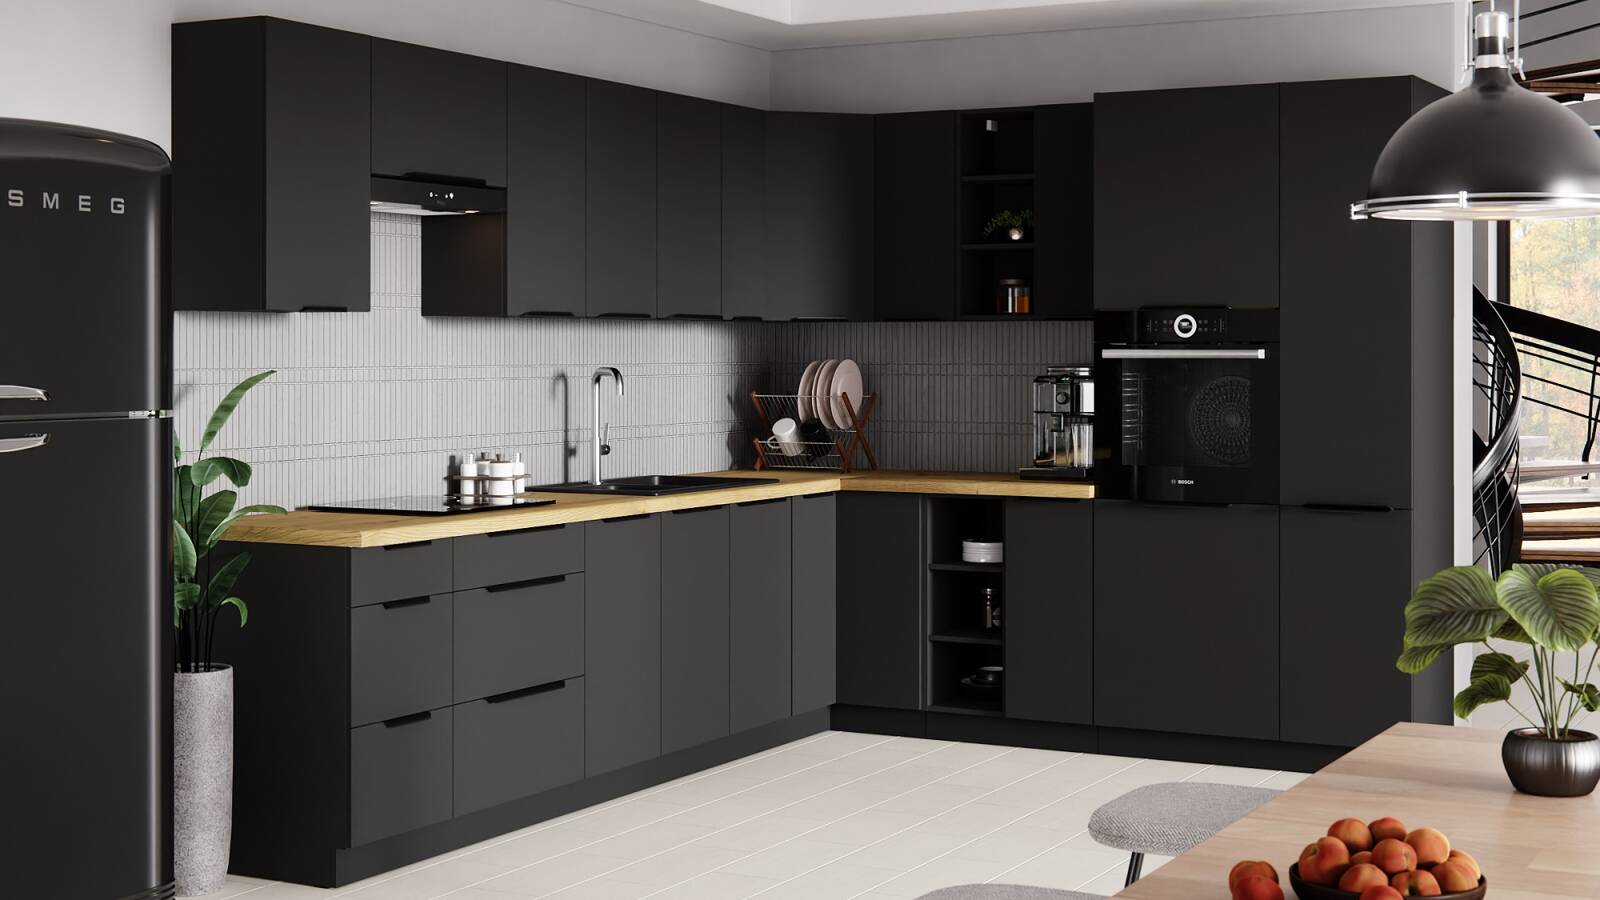 Küchenschrank unter der Spüle Schwarz 50 ZL 1F BB Metallkante Griff  feuchtigkeits- und beschädigungsbeständig Schrank | Unsere Möbel für alle -  24unseremoebel